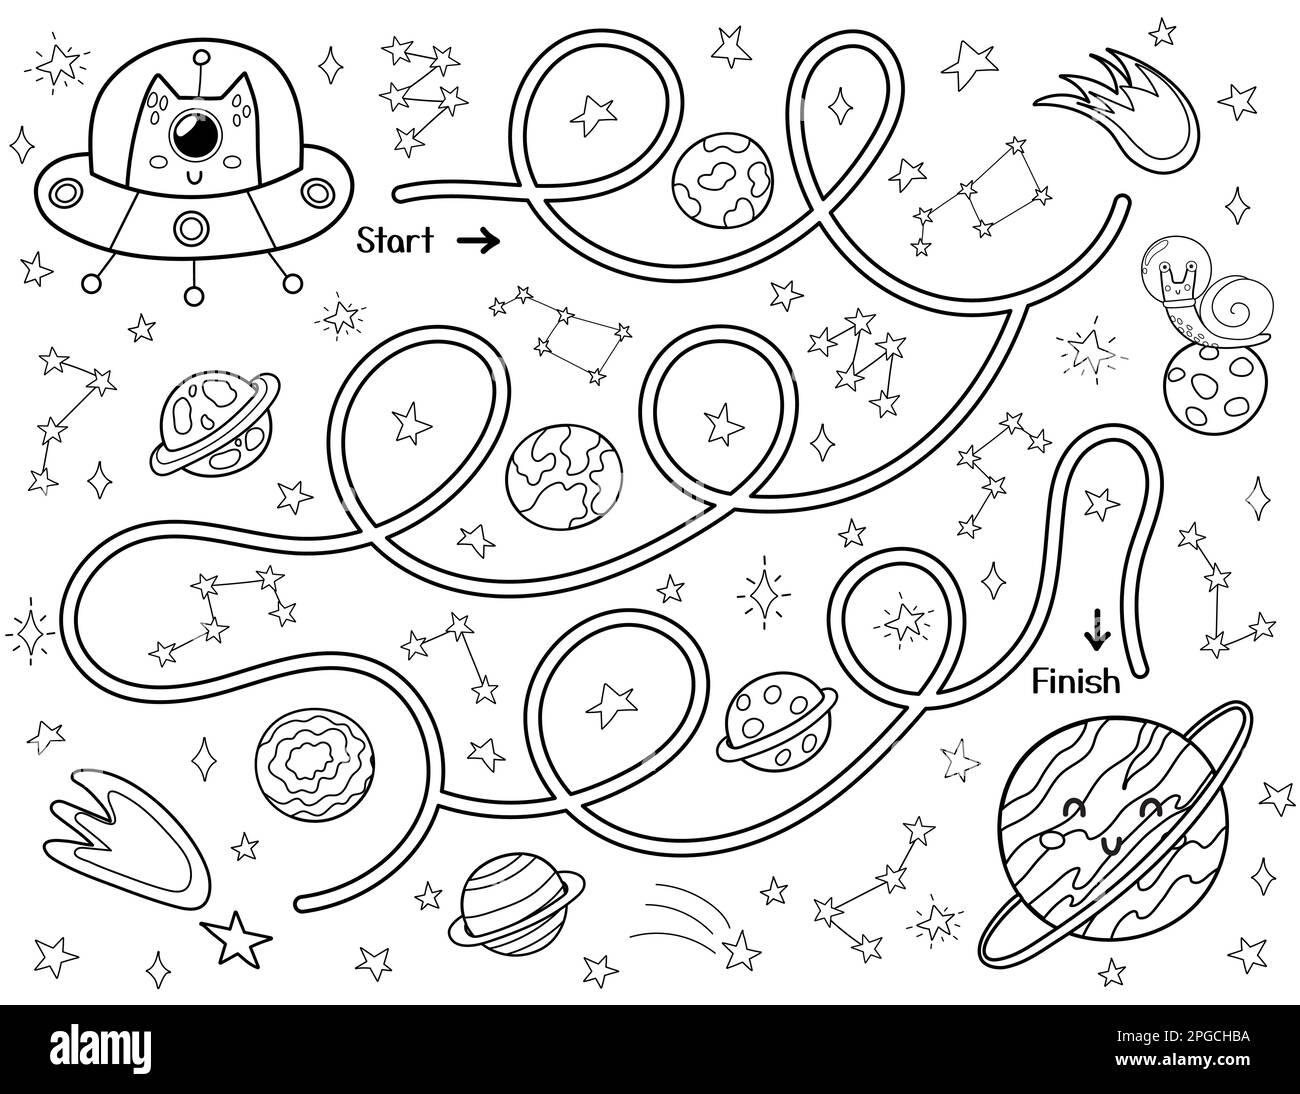 Schwarz-Weiß-Labyrinth für Kinder. Hilf einem süßen Außerirdischen in einer fliegenden Untertasse, den Weg zum Planeten zu finden Stock Vektor